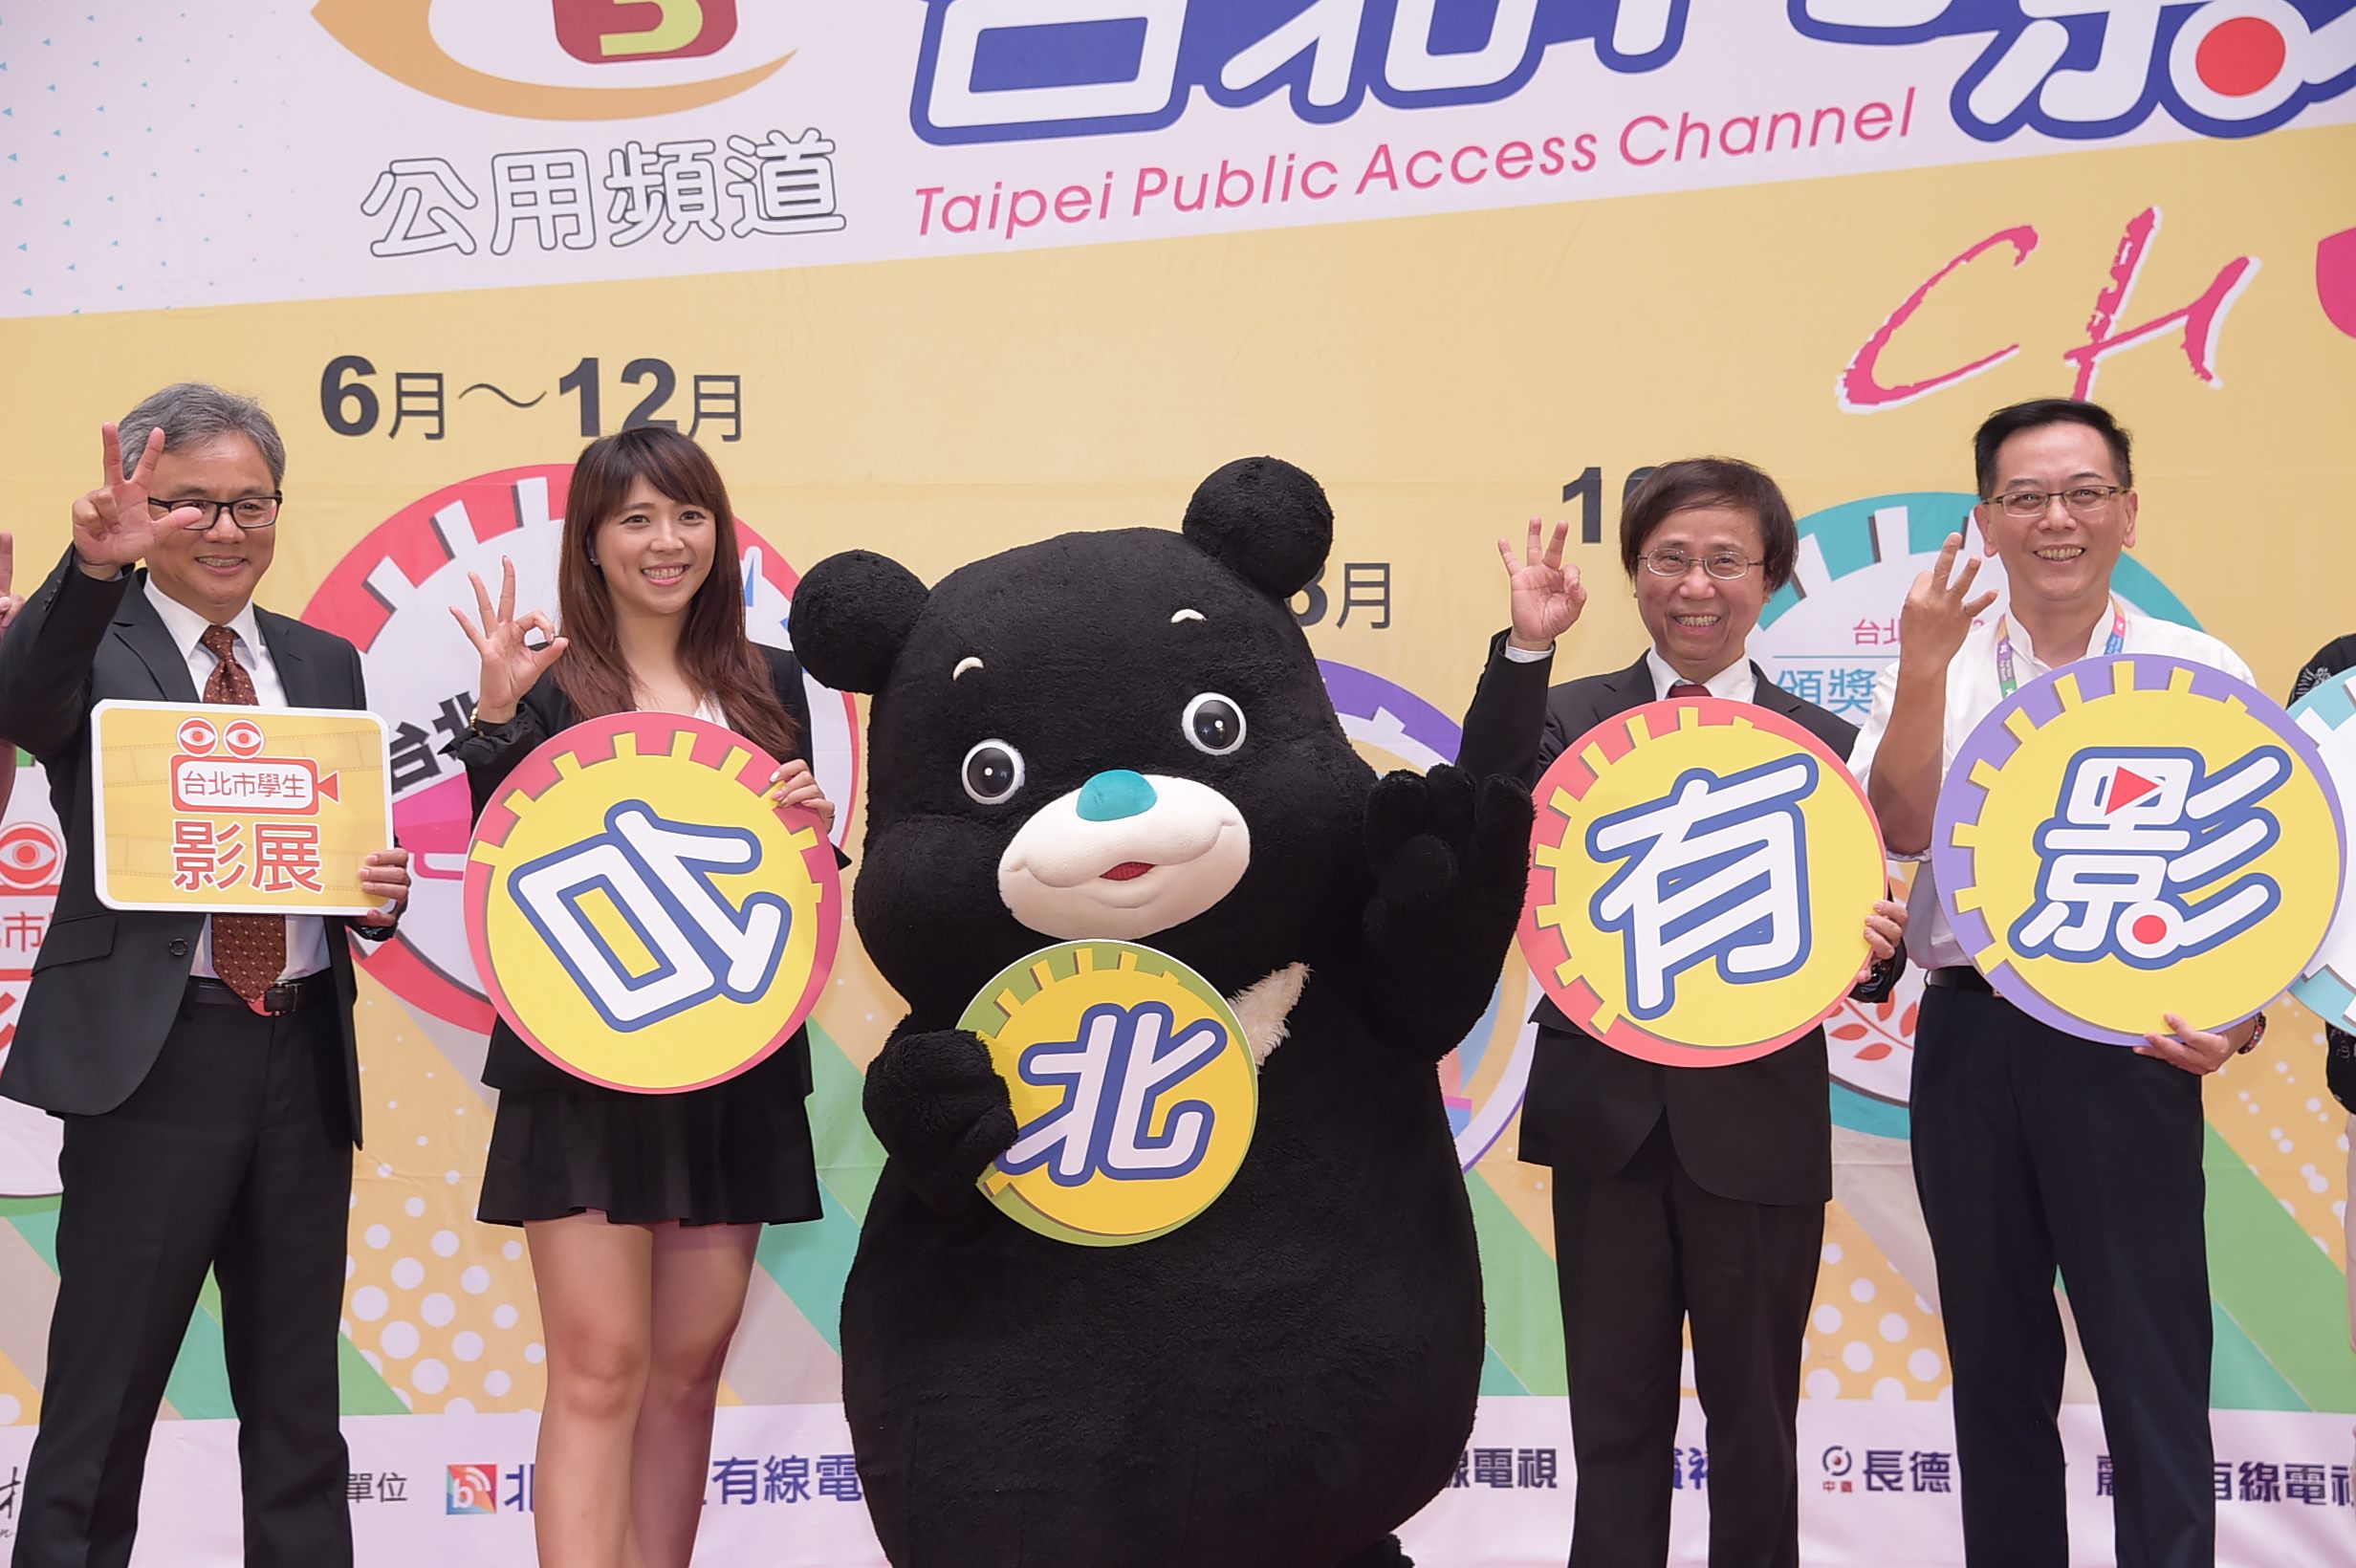 臺北市觀光傳播局局長陳思宇等人和熊讚歡迎市民踴躍參加活動